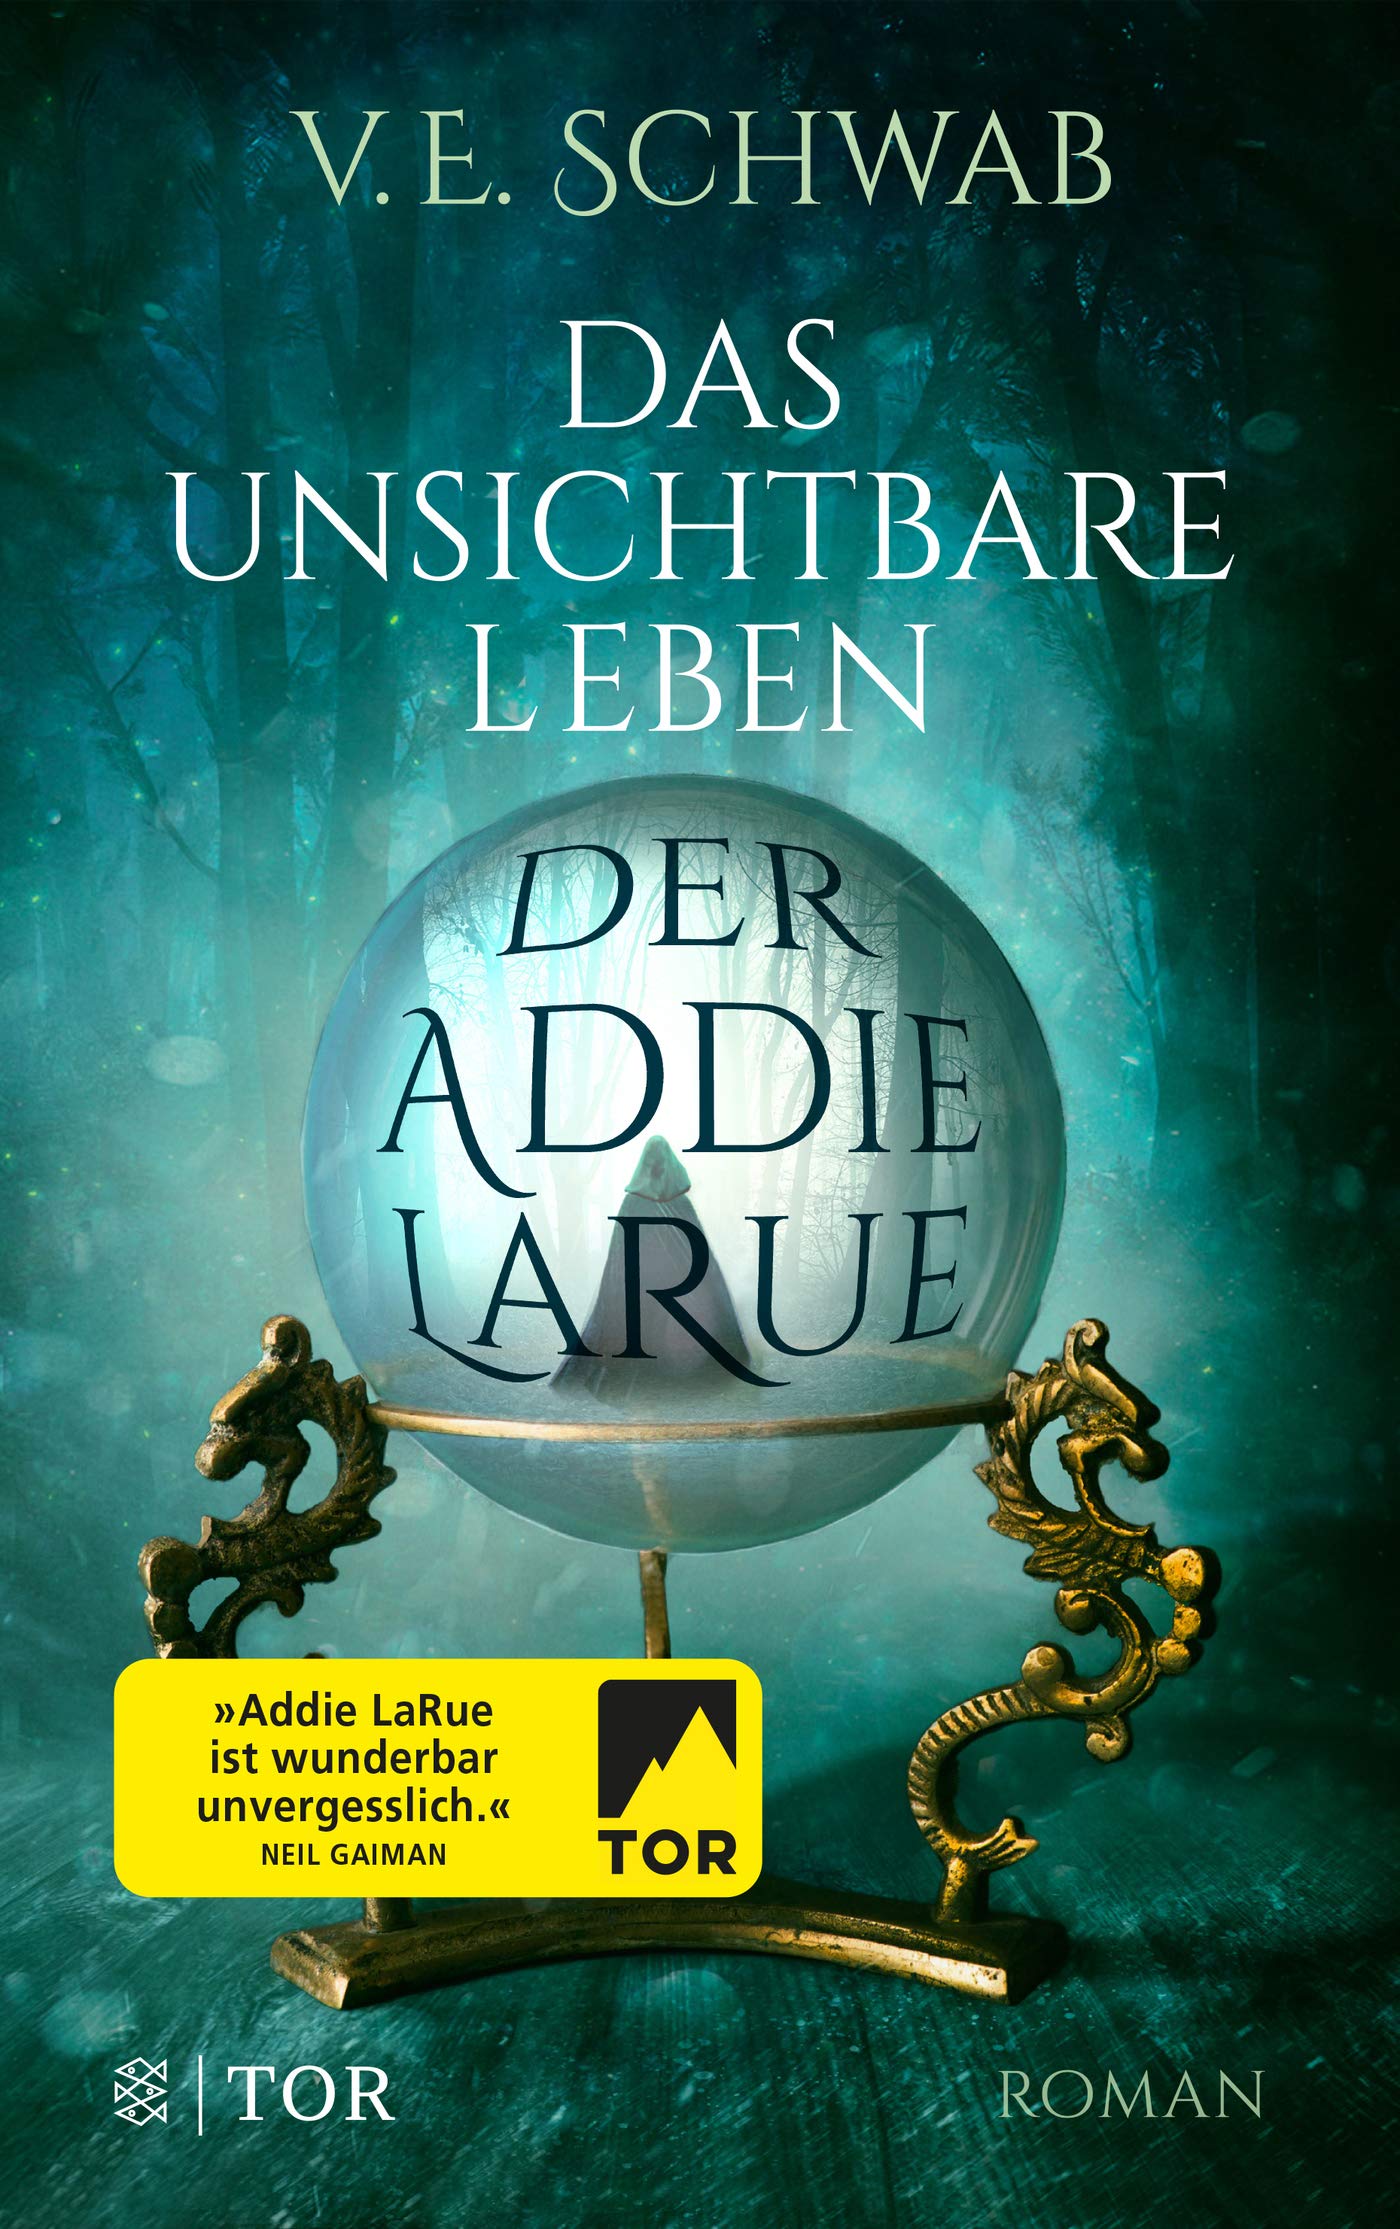 Das unsichtbare Leben der Addie LaRue | V. E. Schwab